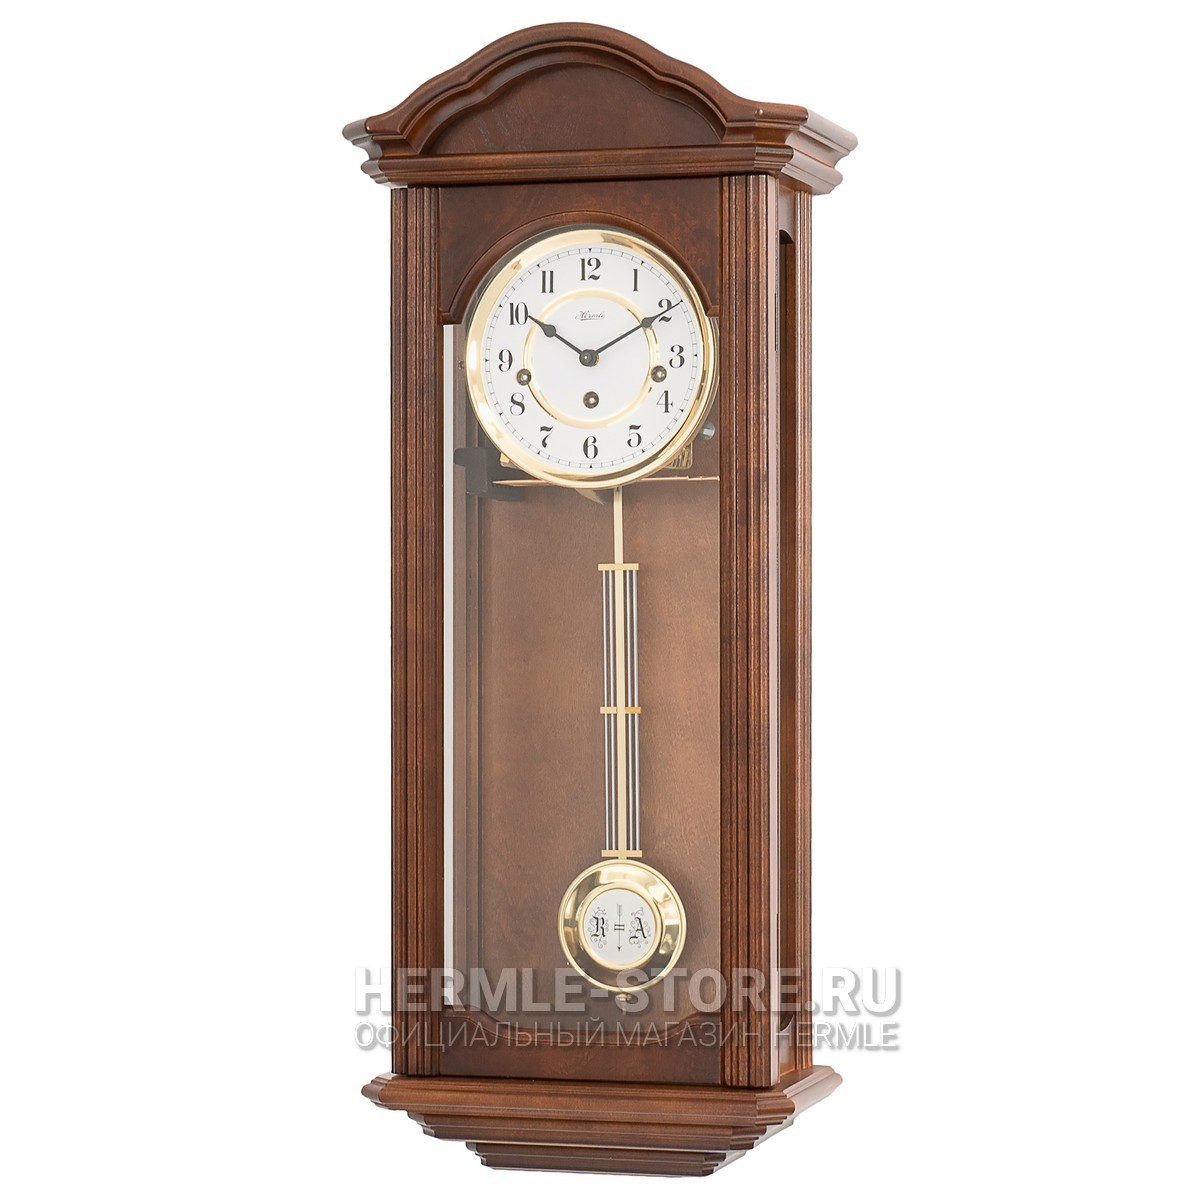 Напольные часы с маятником в деревянном корпусе. Hermle 01232-030271. Hermle часы настенные. Часы с маятником. Маятниковые часы.